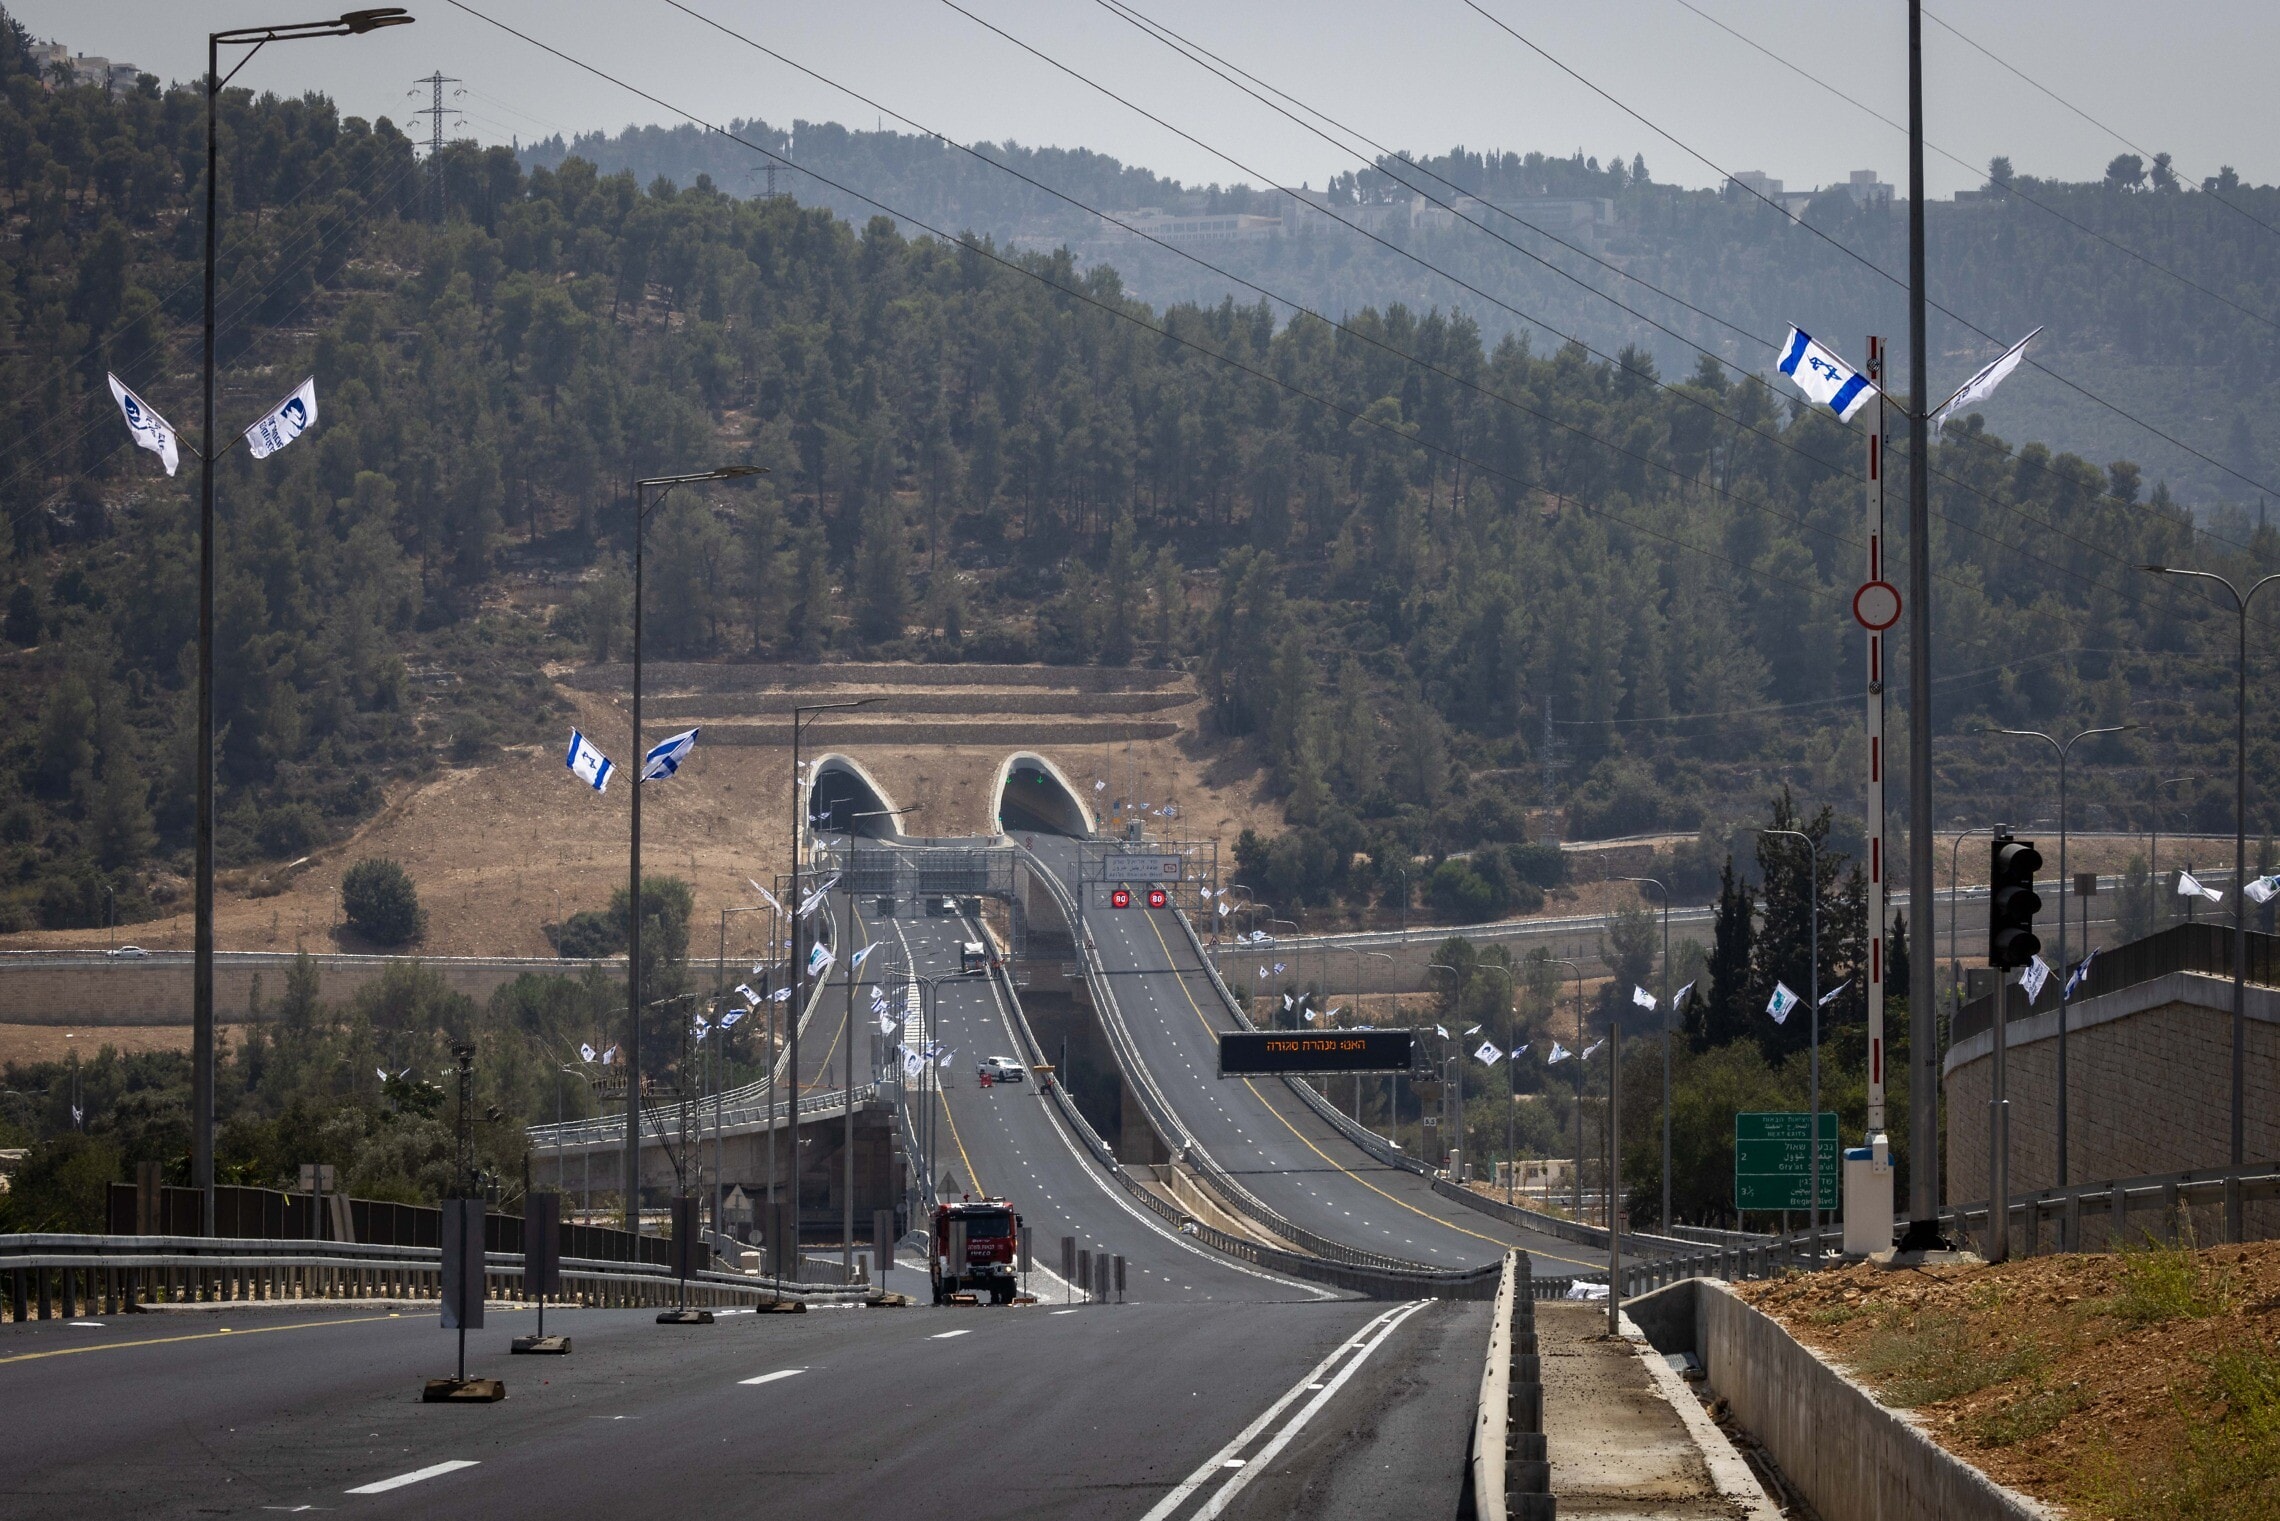 מבט כללי על כביש 16 ומנהרותיו המאפשרות גישה ישירה לחלקים הדרומיים והמרכזיים של העיר ירושלים ממערב, אוגוסט 2022 (צילום: אוליבייה פיטוסי/פלאש90)